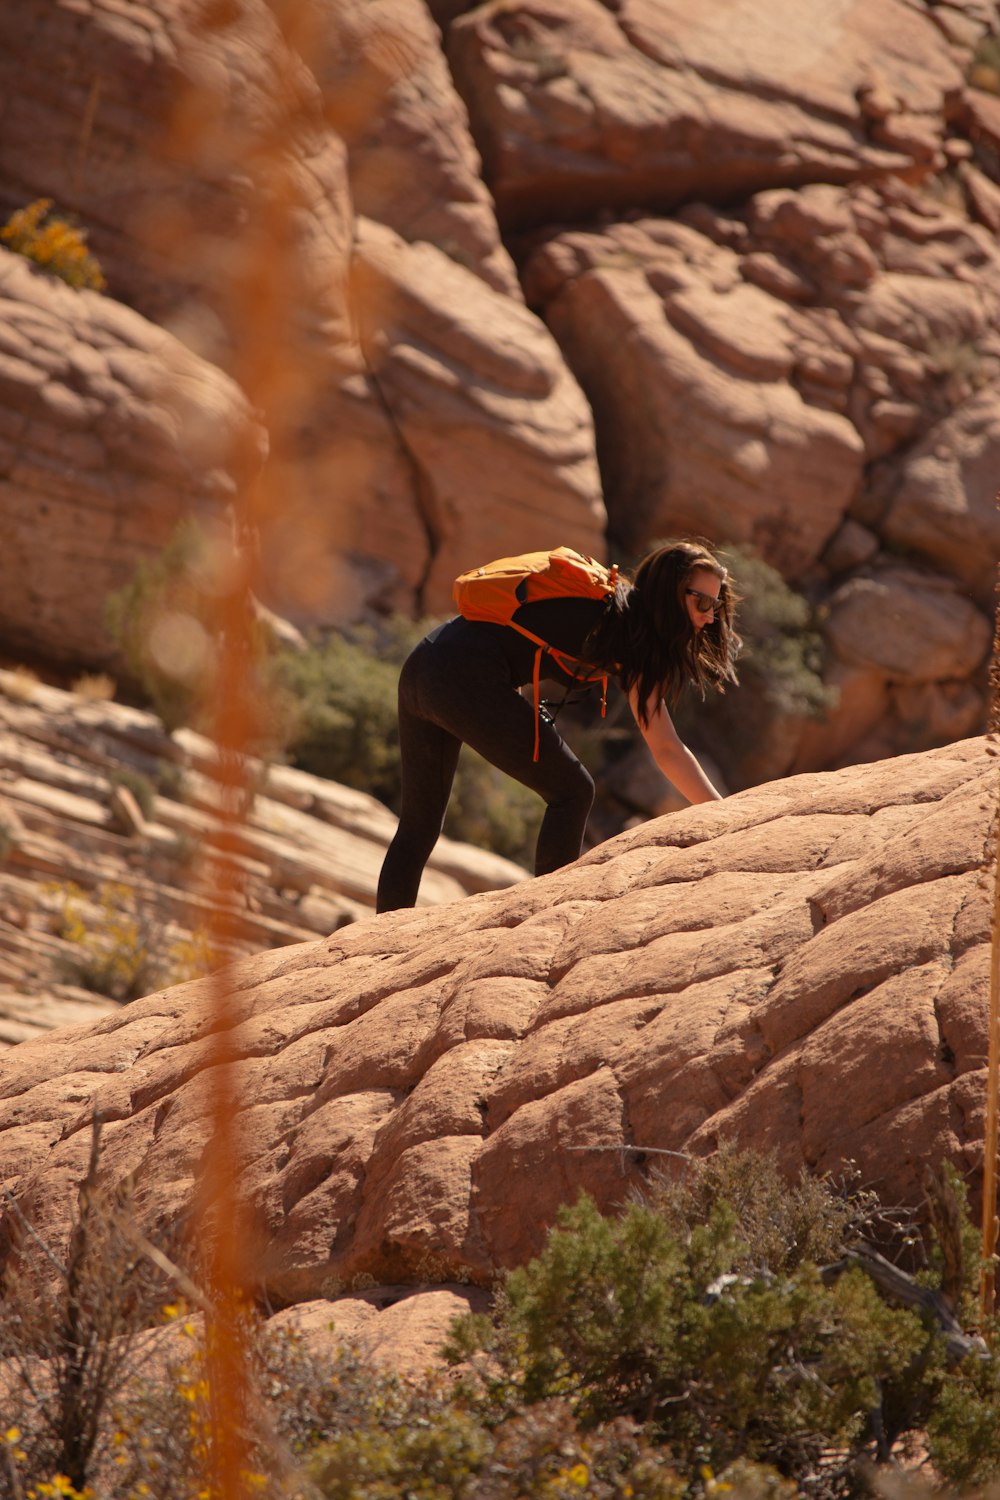 a man climbing up a rock in the desert